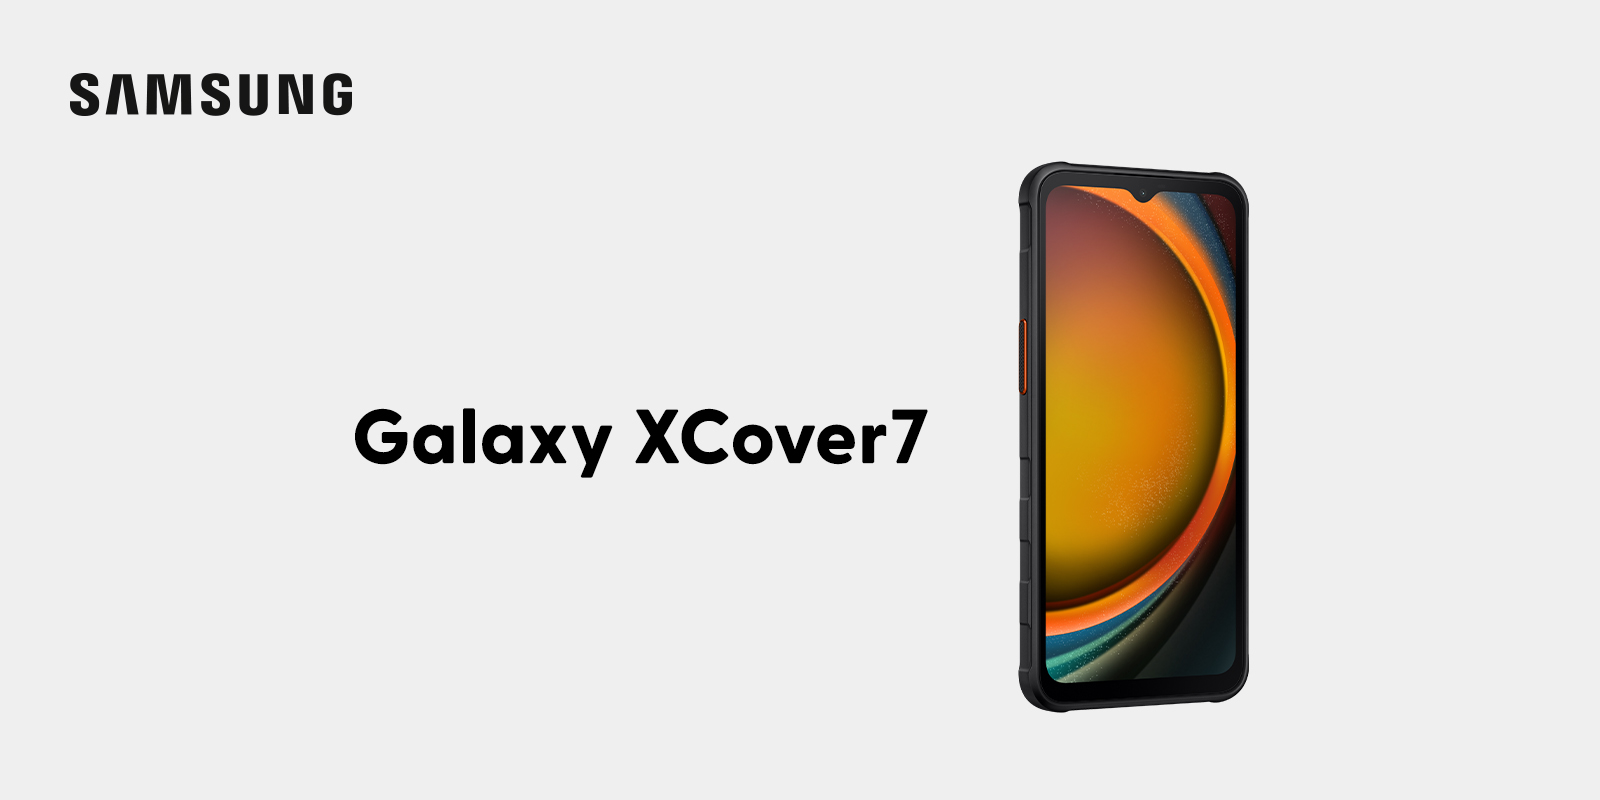 Sicher, robust und ausdauernd: Samsung Galaxy XCover7